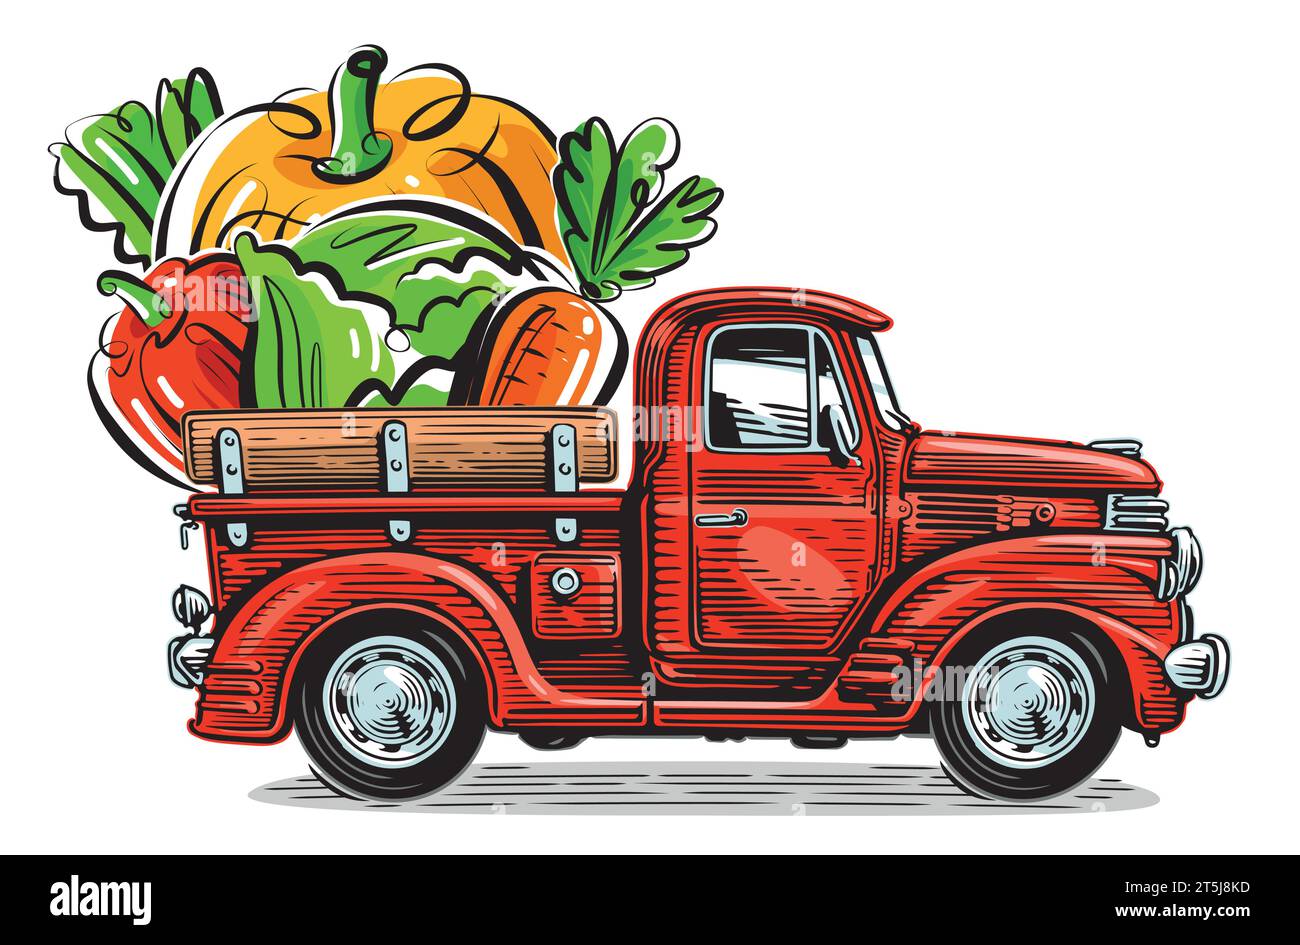 Retro-Farm-Pickup und frisches Bio-Gemüse. Natürliche gesunde Lebensmittel Vektor-Illustration Stock Vektor